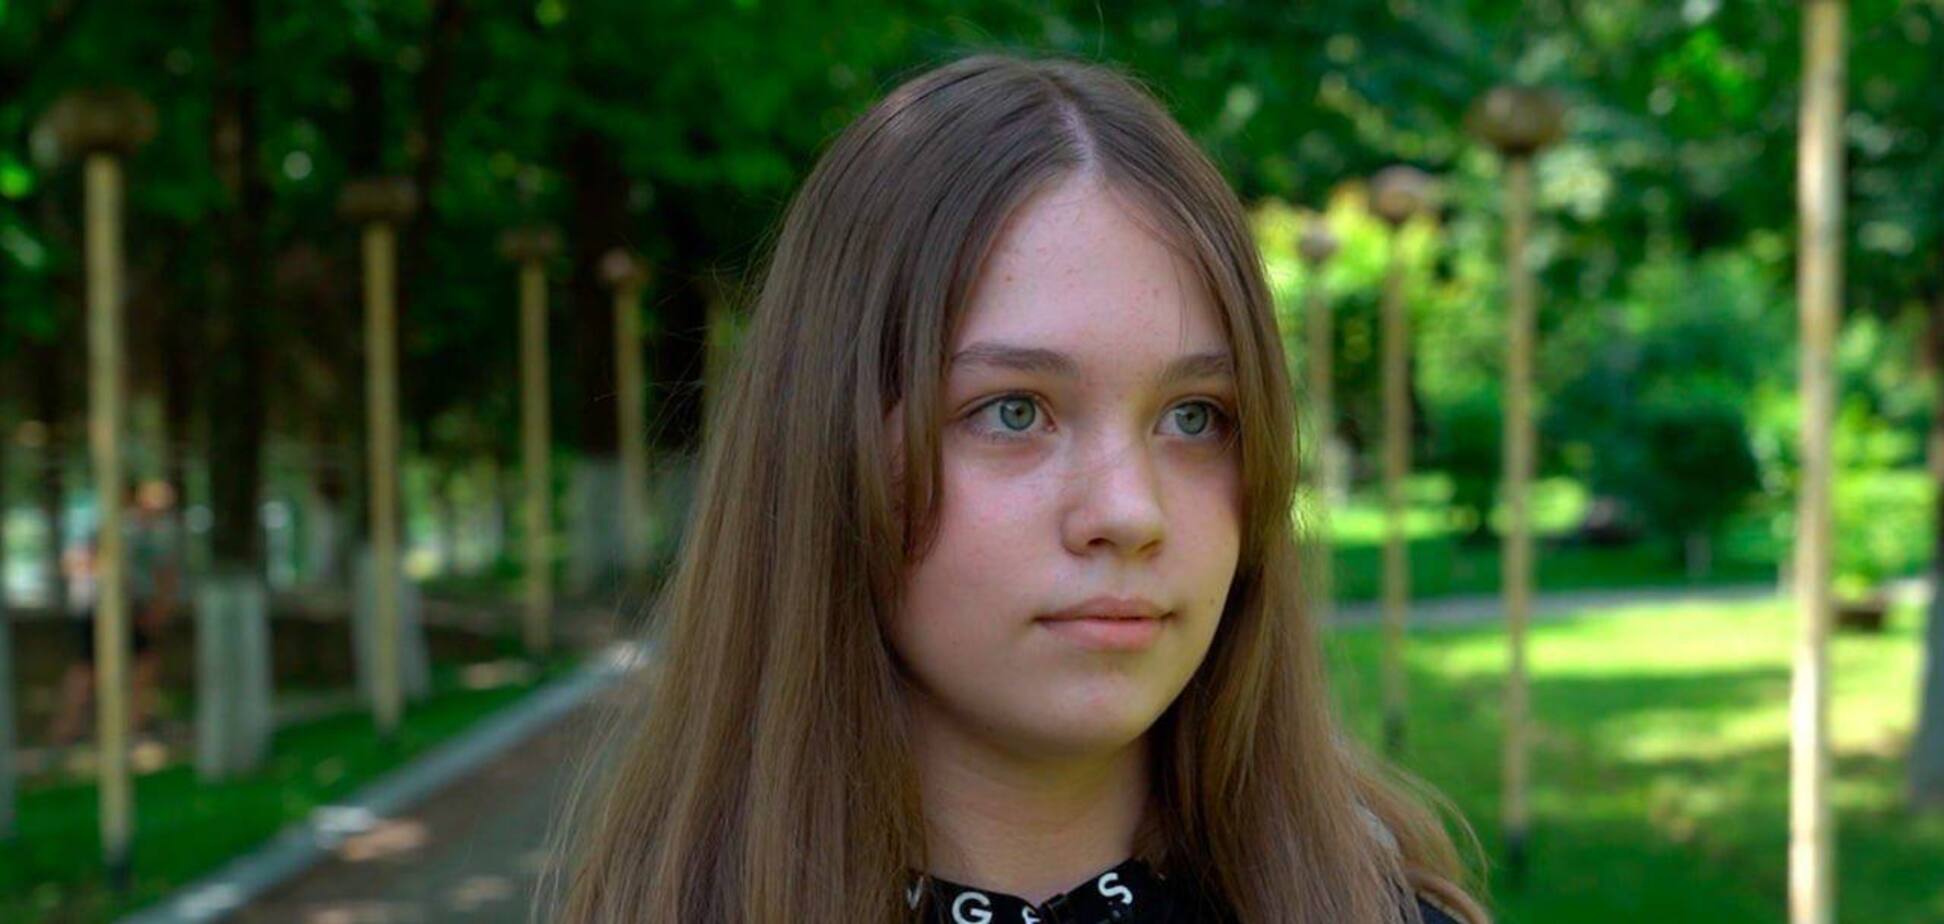 'Від шоку не розуміла, що її поранено': Фонд Ріната Ахметова допоміг 12-річній Софії з реабілітацією